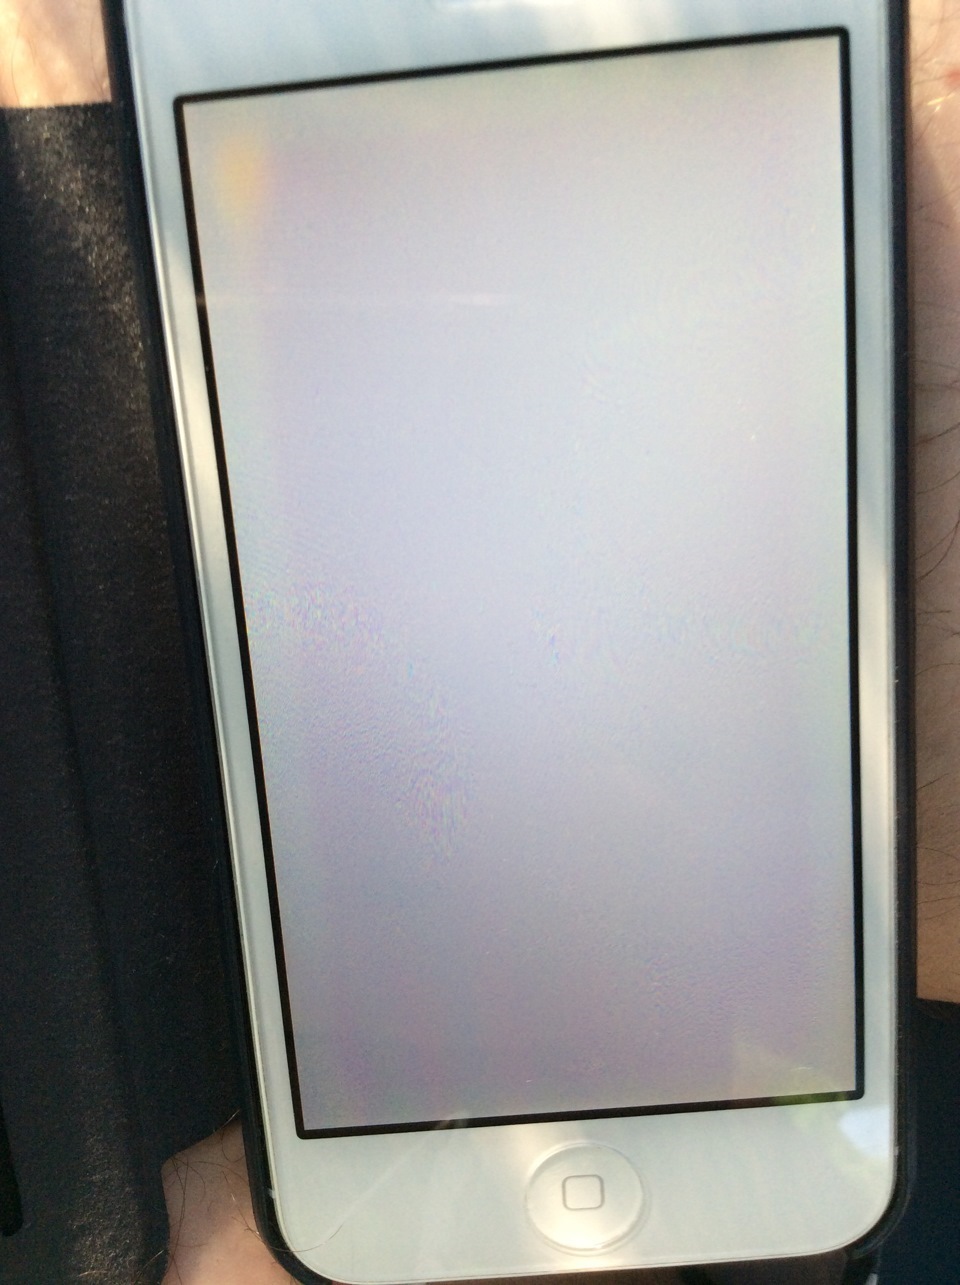 Экран телефона стал белым что делать. Желтит экран айфон 5. Рамка айфон с белым экраном. Полоски по краям экрана смартфона. Потемнение на экране айфона.